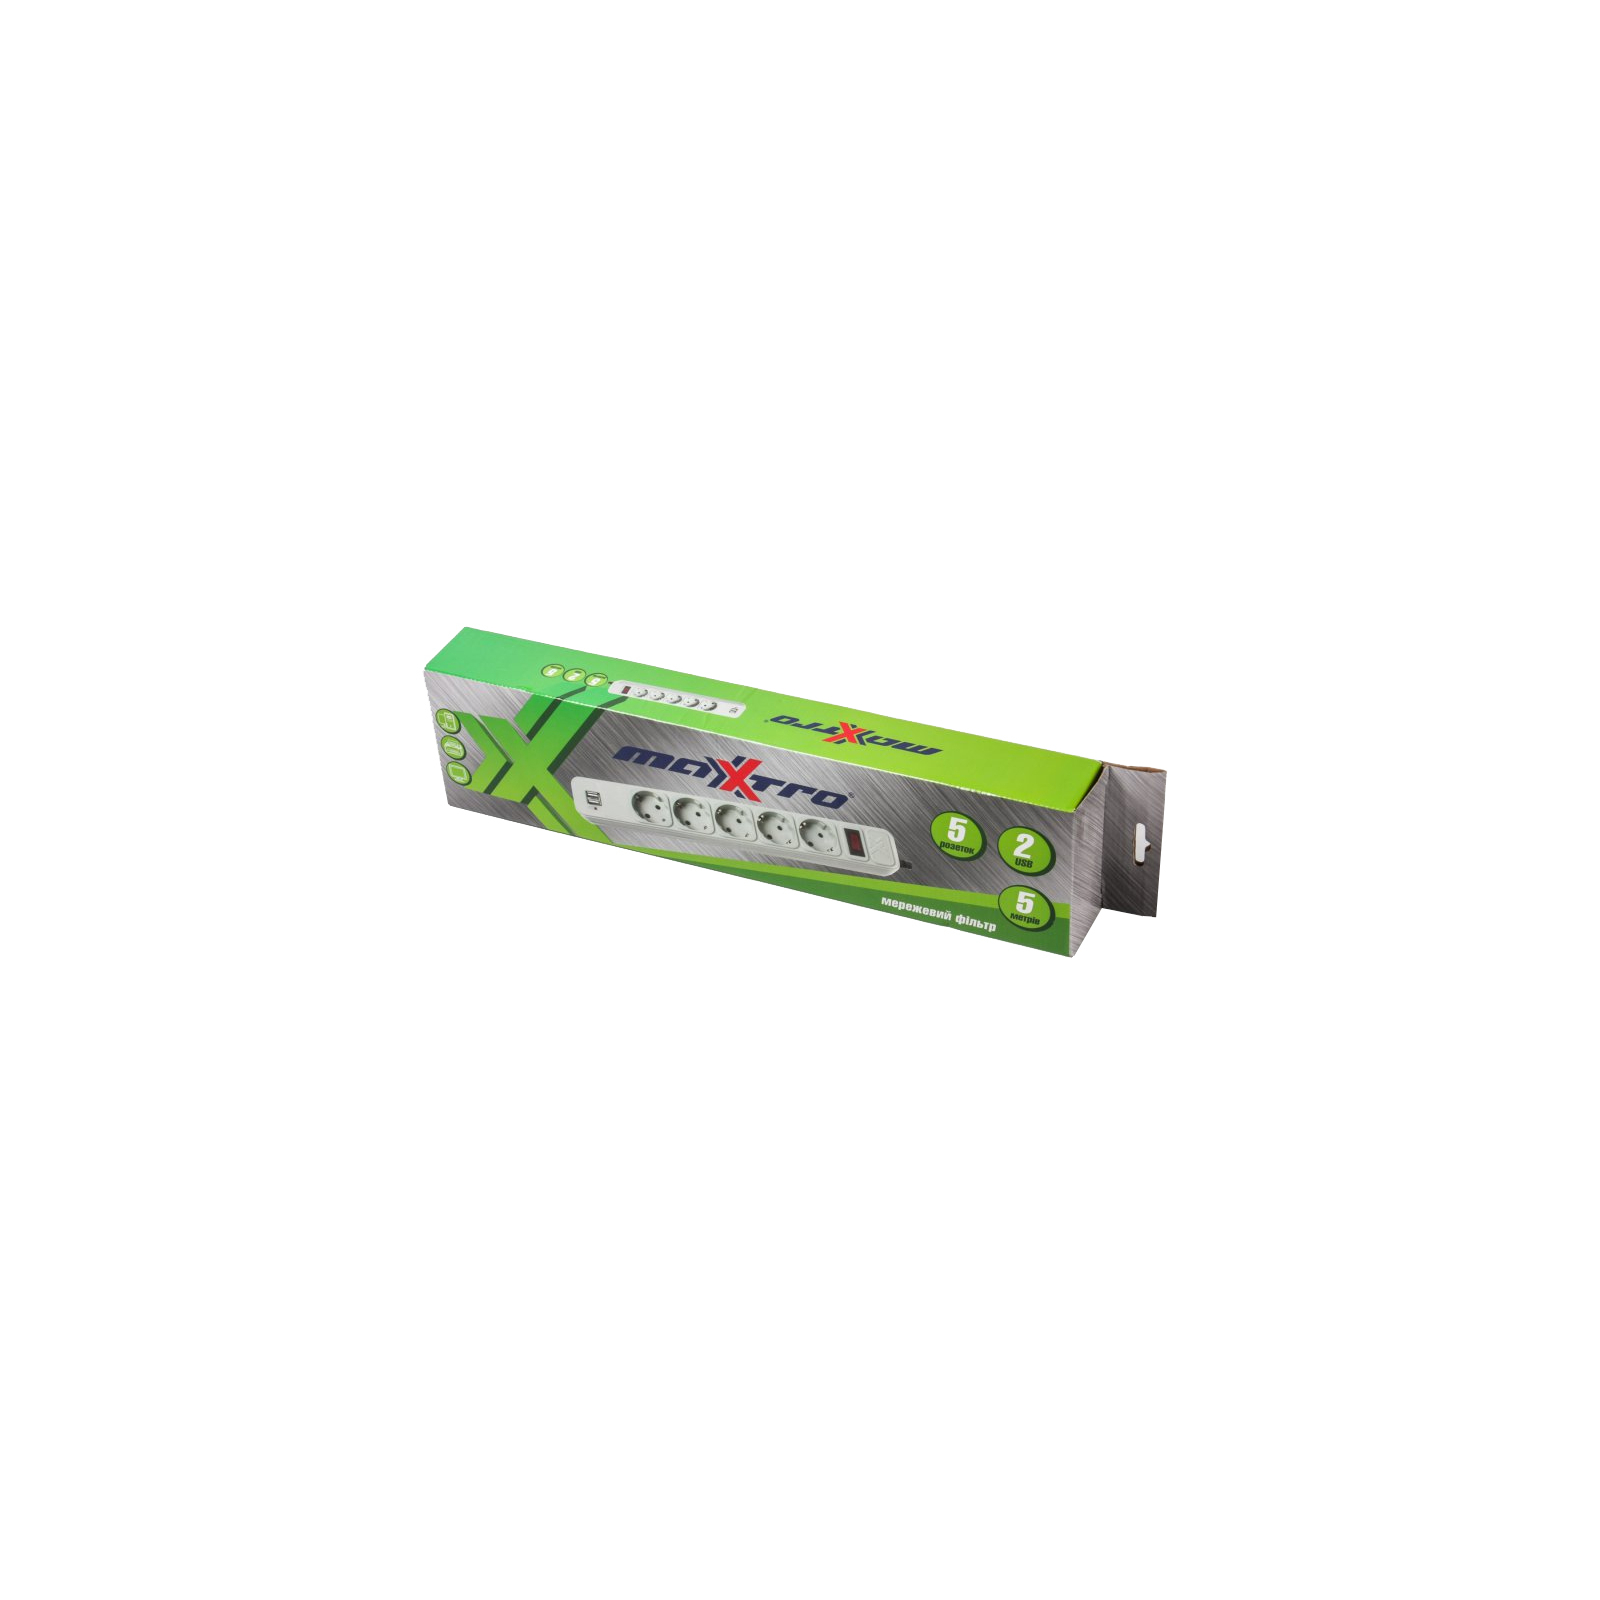 Сетевой фильтр питания Maxxtro PWE-05K-5, Grey, 4.5 м кабель, 5 розеток, USB зарядка 2А (PWE-05K-5) изображение 2